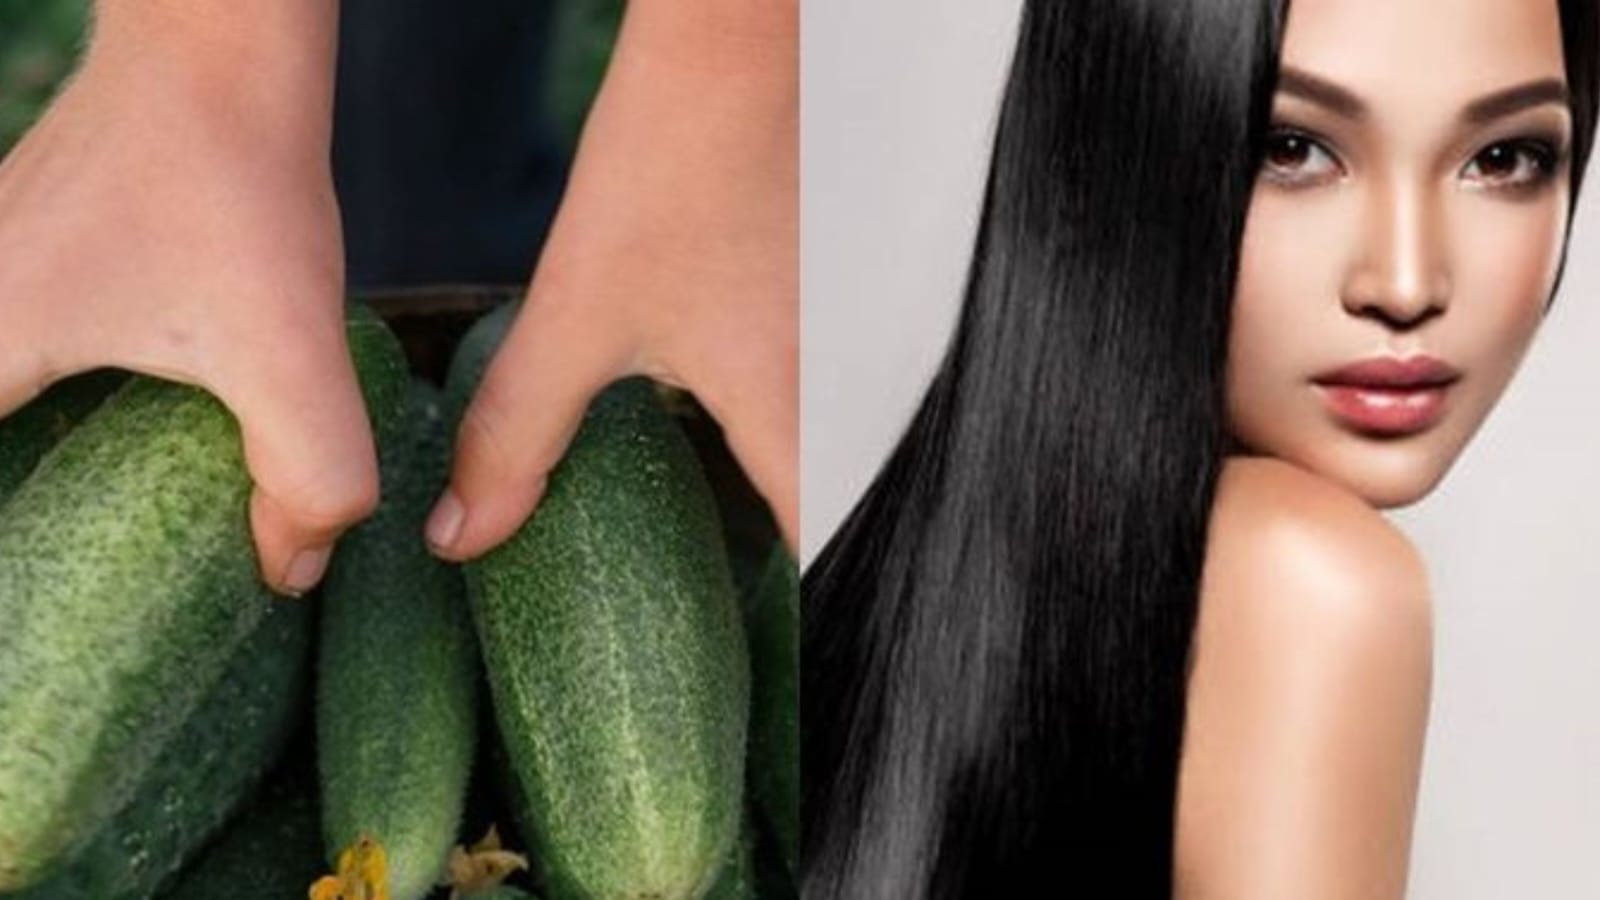 Rahasia Menghilangkan Uban dengan Cepat: Trik Sederhana Sayur Bayam Agar Rambut Kembali Hitam Seperti Masa Mud